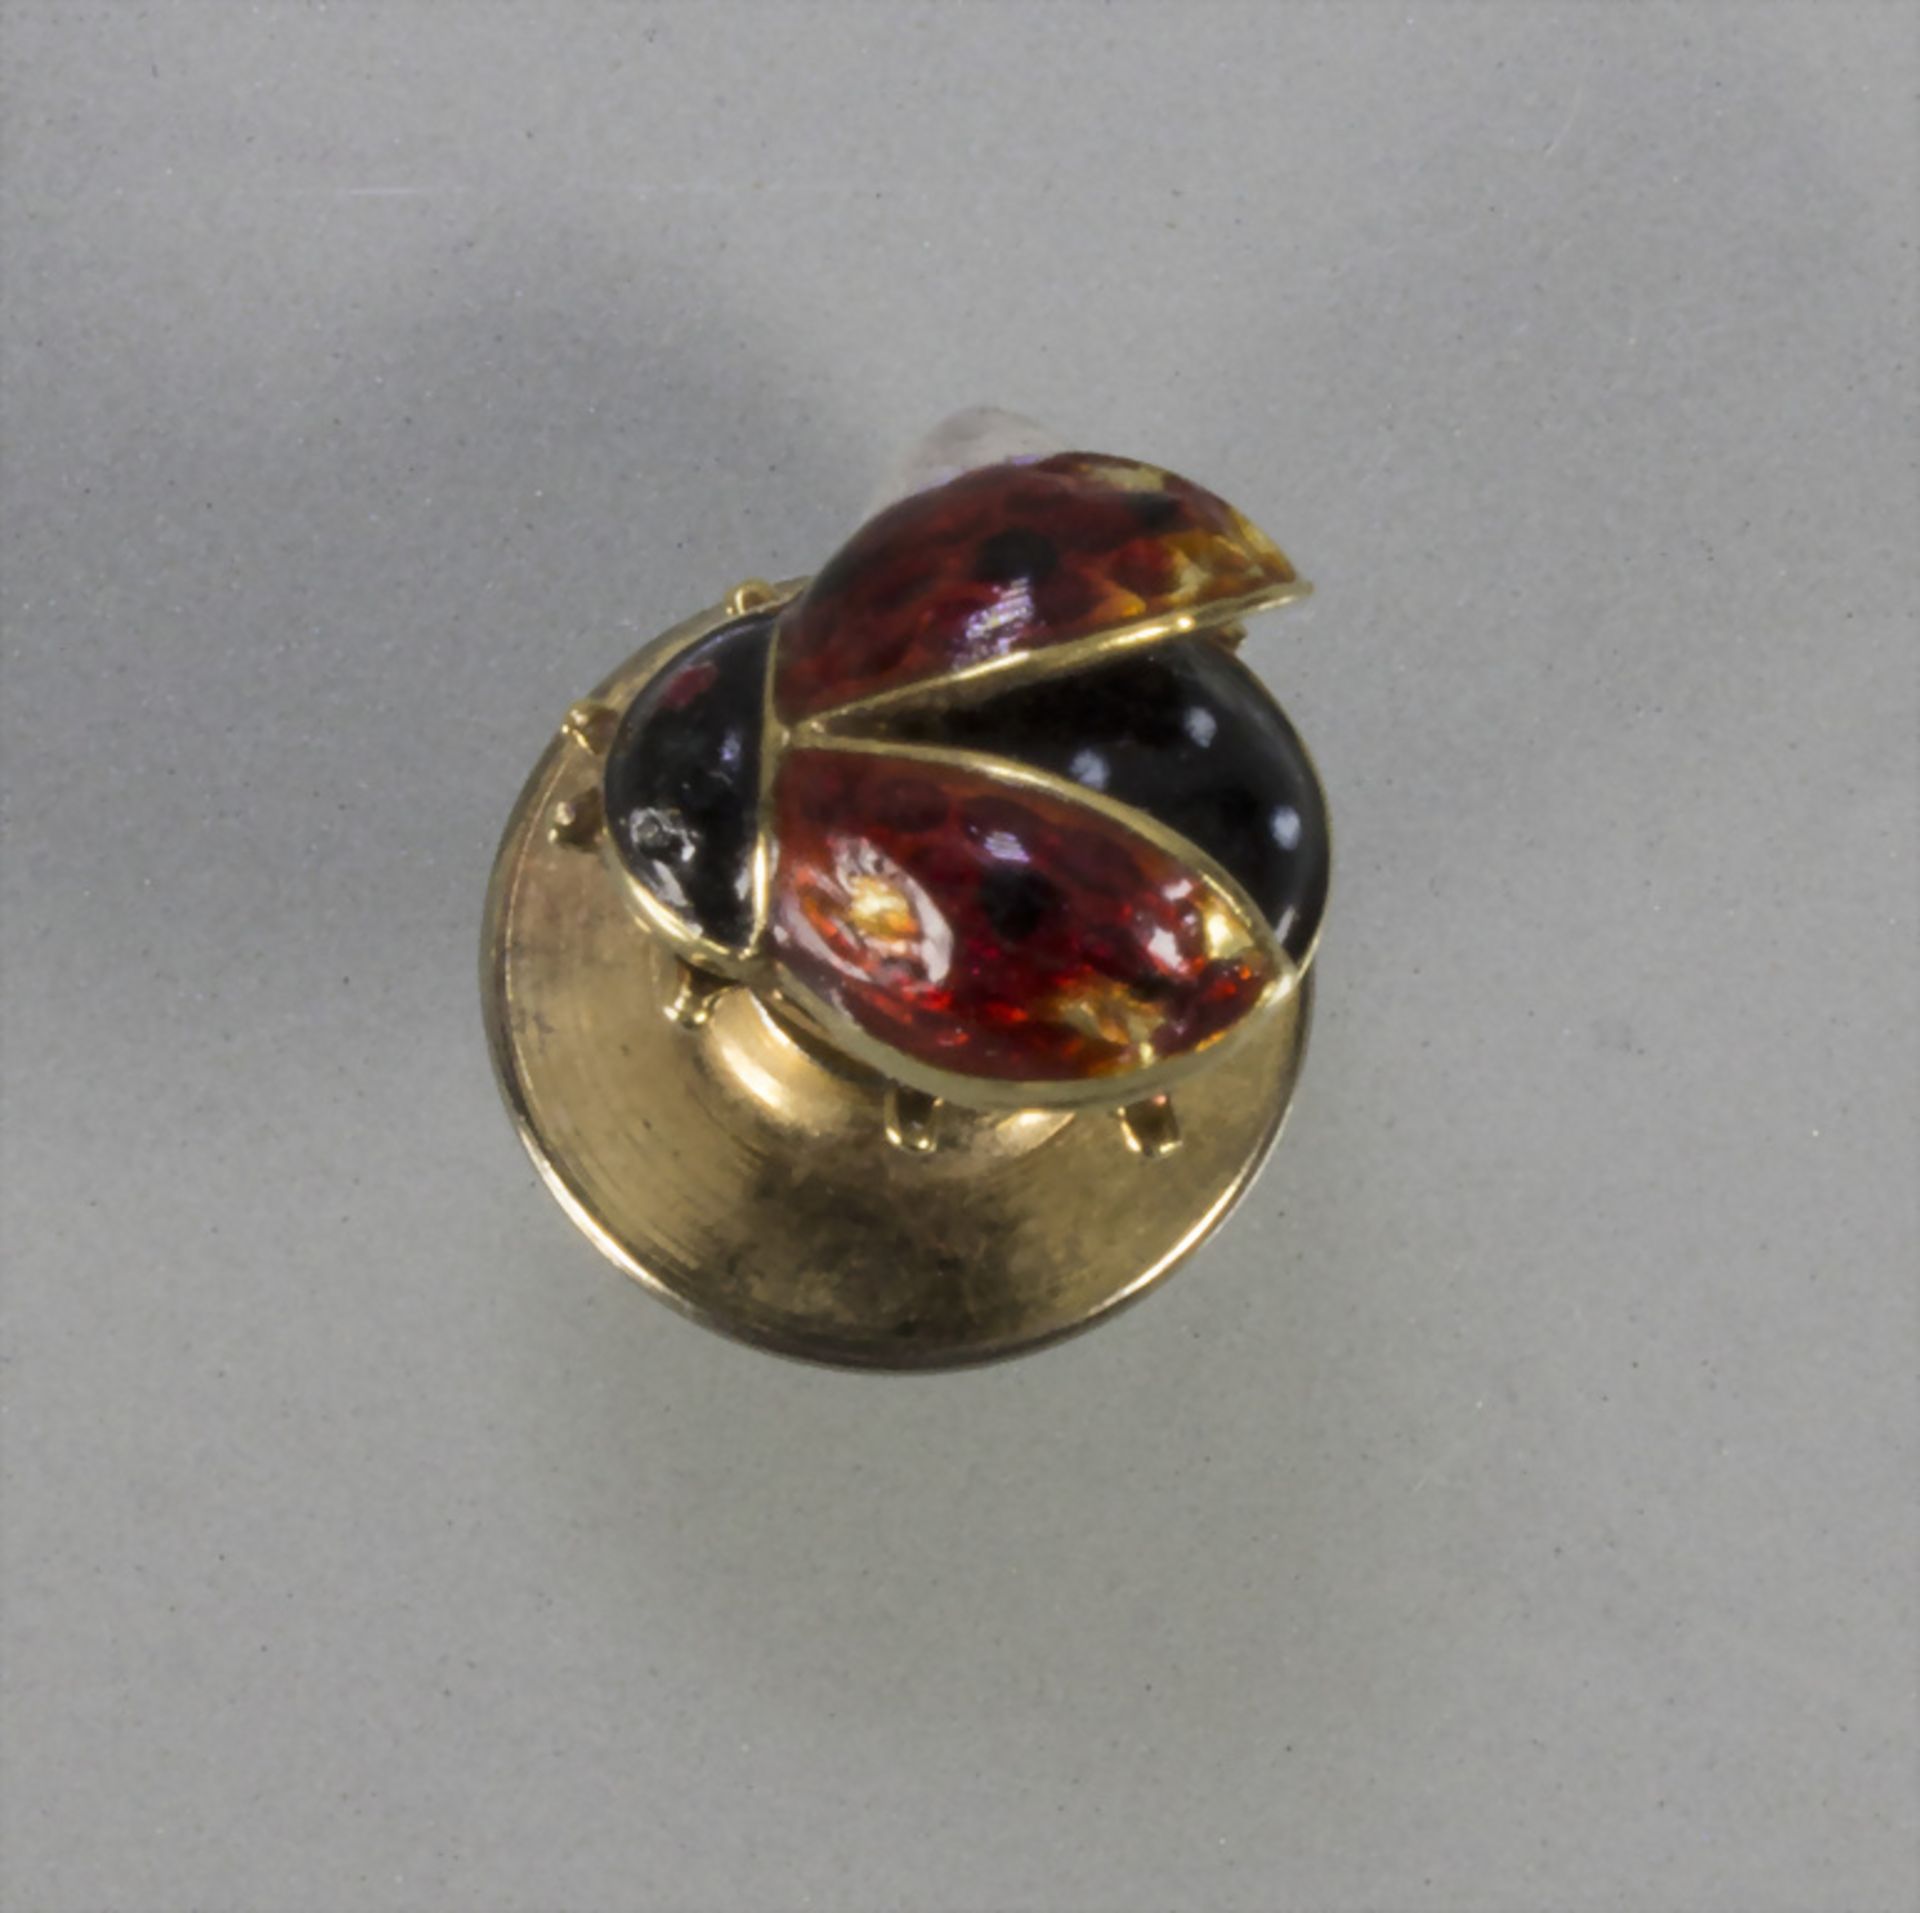 Anstecker 'Marienkäfer' / An 18 ct gold pin 'ladybird'